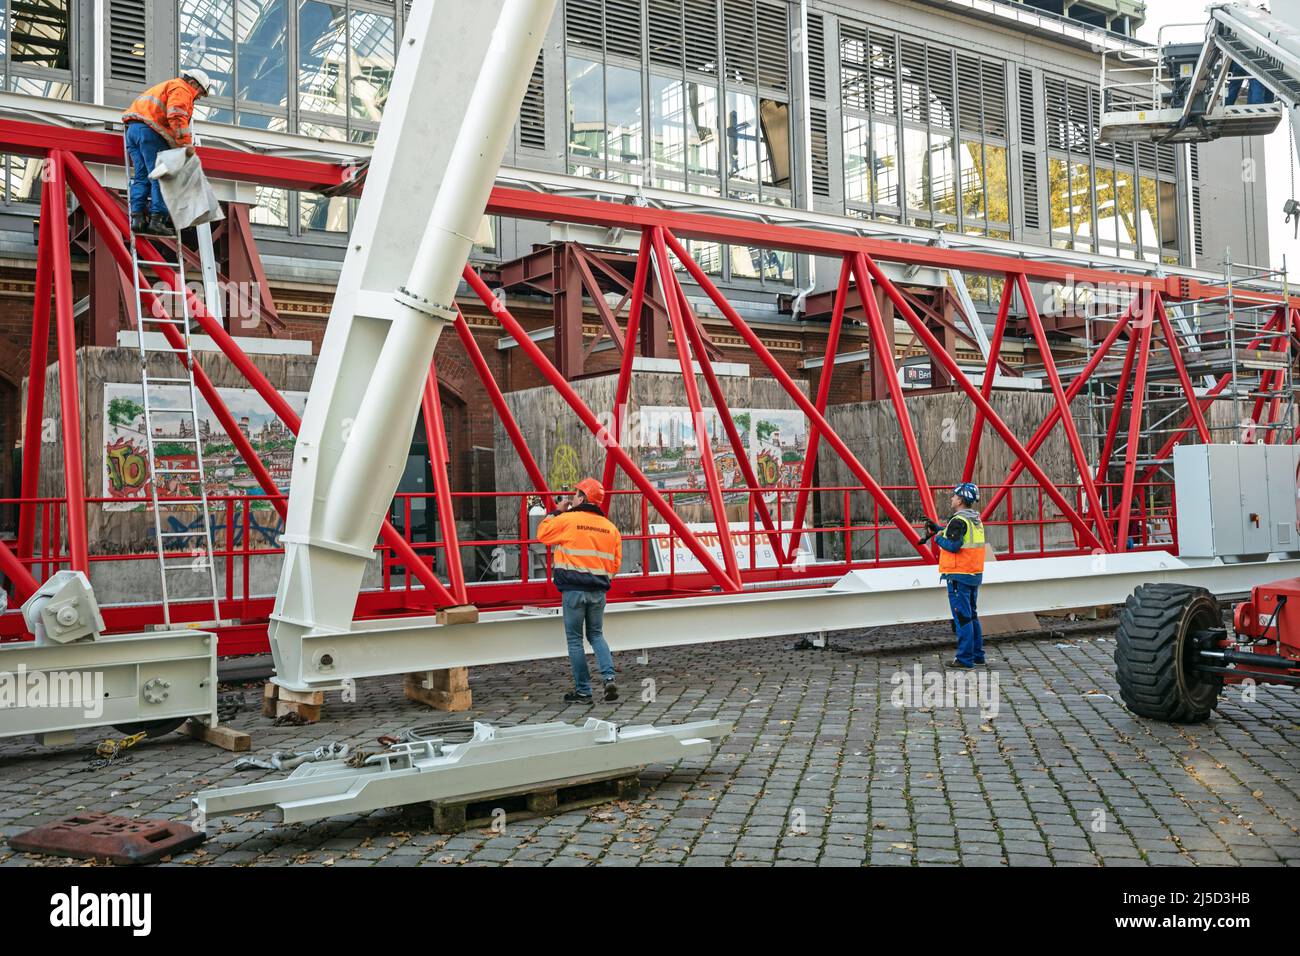 Deutschland, Berlin, 31. Oktober 2021. Bauarbeiten am Ostbahnhof am 31. Oktober 2021. Geplant ist, eine 75 Meter lange Stahlkonstruktion in einer Höhe von mehr als 40 Metern über dem nördlichen Hallendach des Ostbahnhofs so zu platzieren, dass sie über die gesamte Länge hin- und herbewegt werden kann. Von diesem Brückenträger aus wird die Eisenbahn das Hallendach sanieren. Die Schutzbrücke wiegt sechzig Tonnen und ist siebzig Meter lang. [Automatisierte Übersetzung] Stockfoto